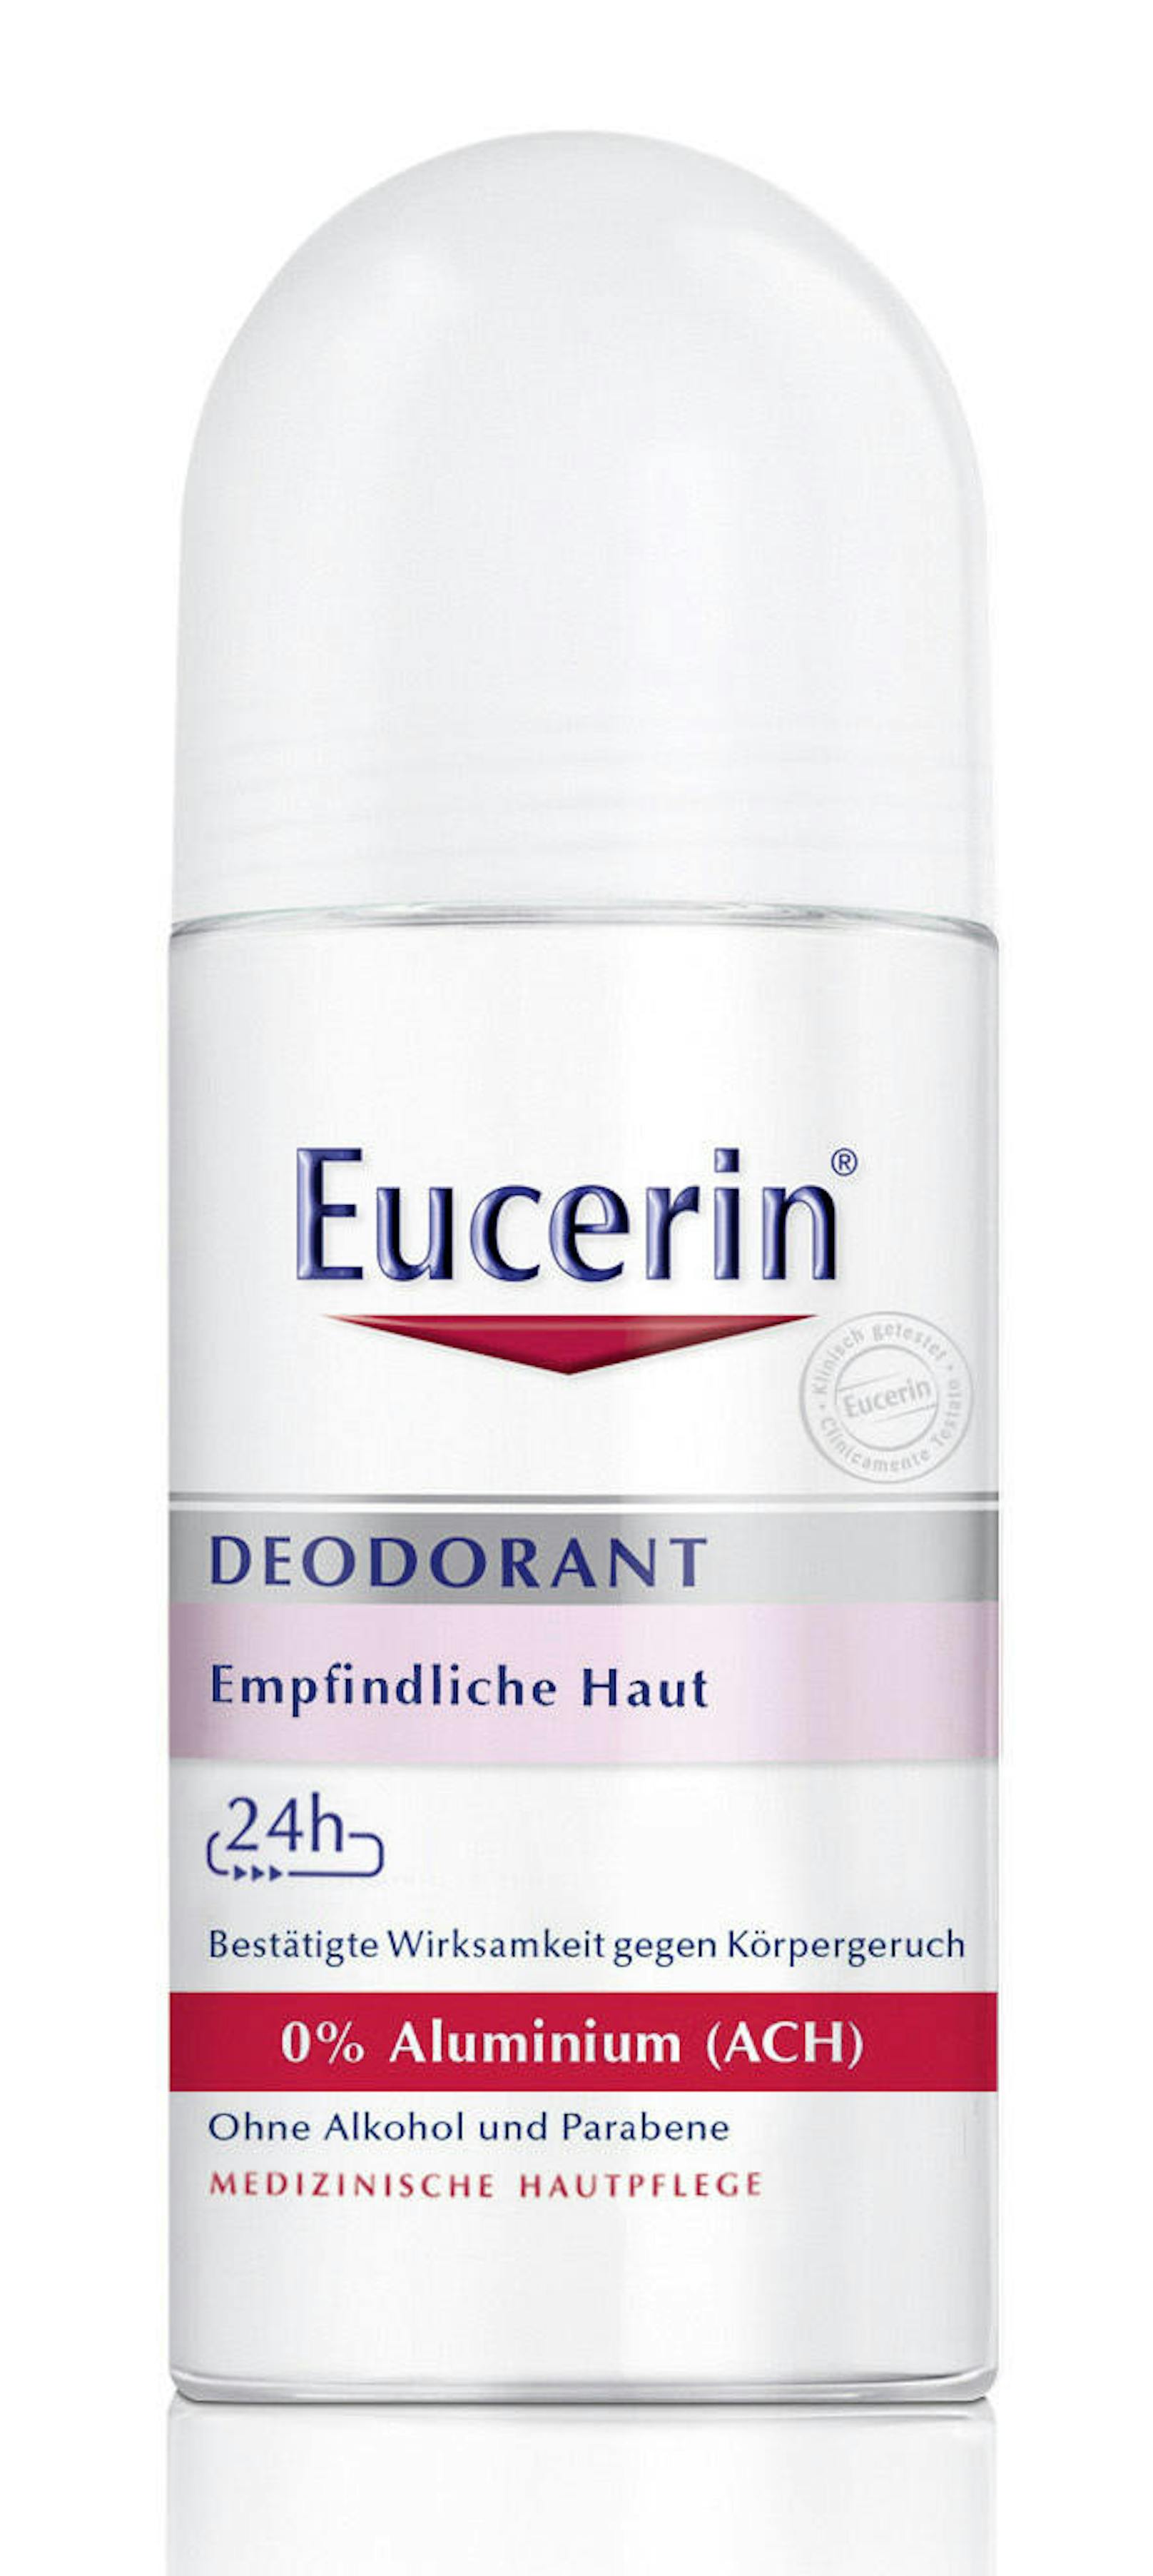 Der <b>Eucerin Deo Roll-on für empfindliche Haut</b> soll 24 Stunden trocken halten und ohne Aluminium vor Körpergeruch schützen. 50ml gibt es um 8,15 Euro.